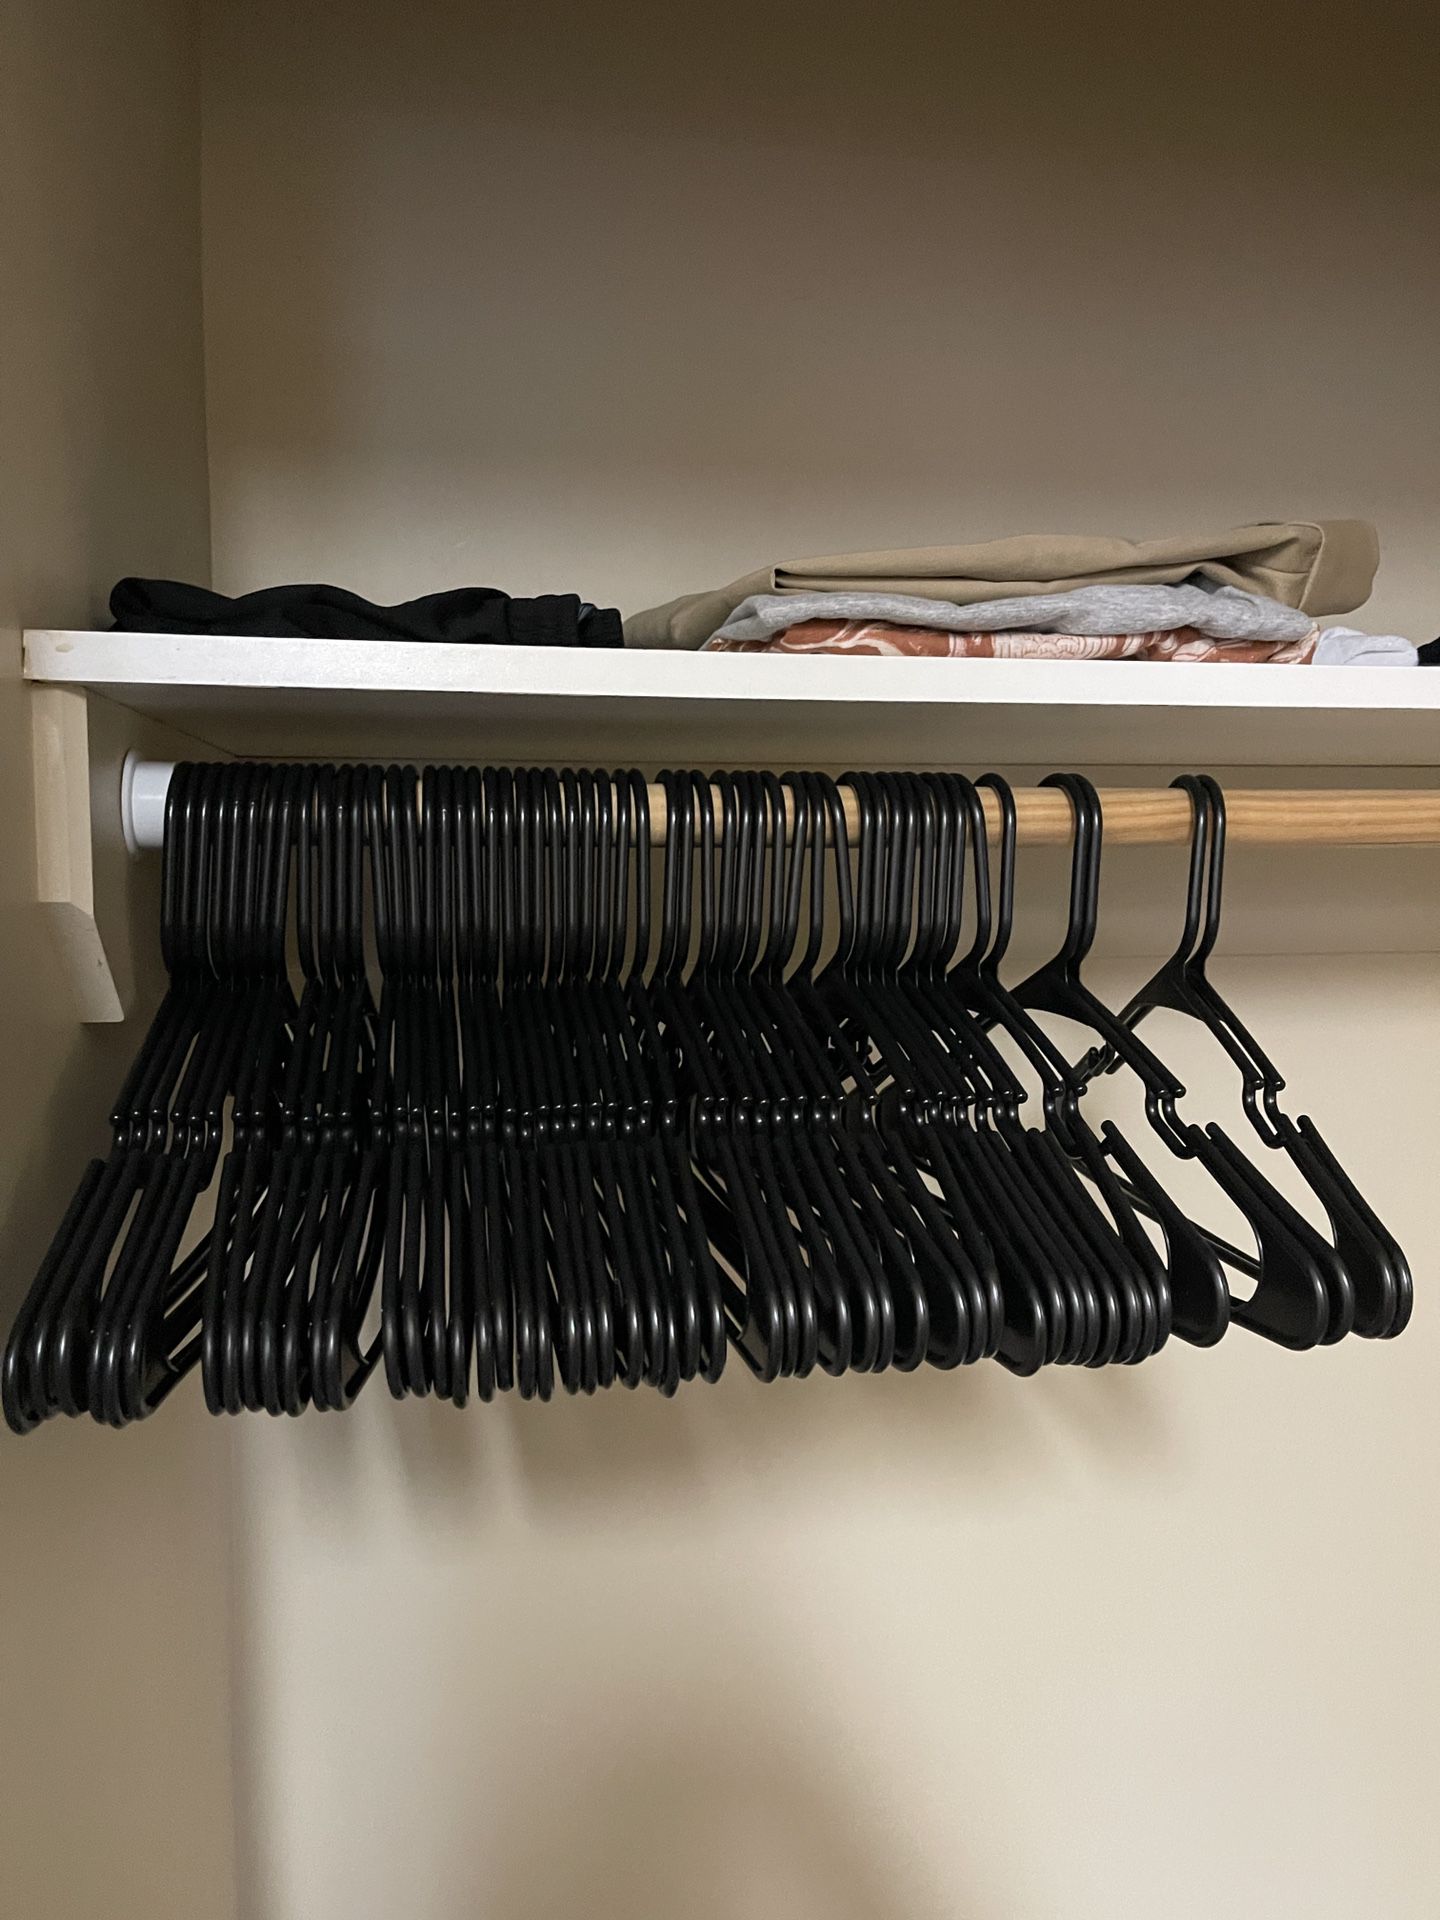 53 walmart hangers